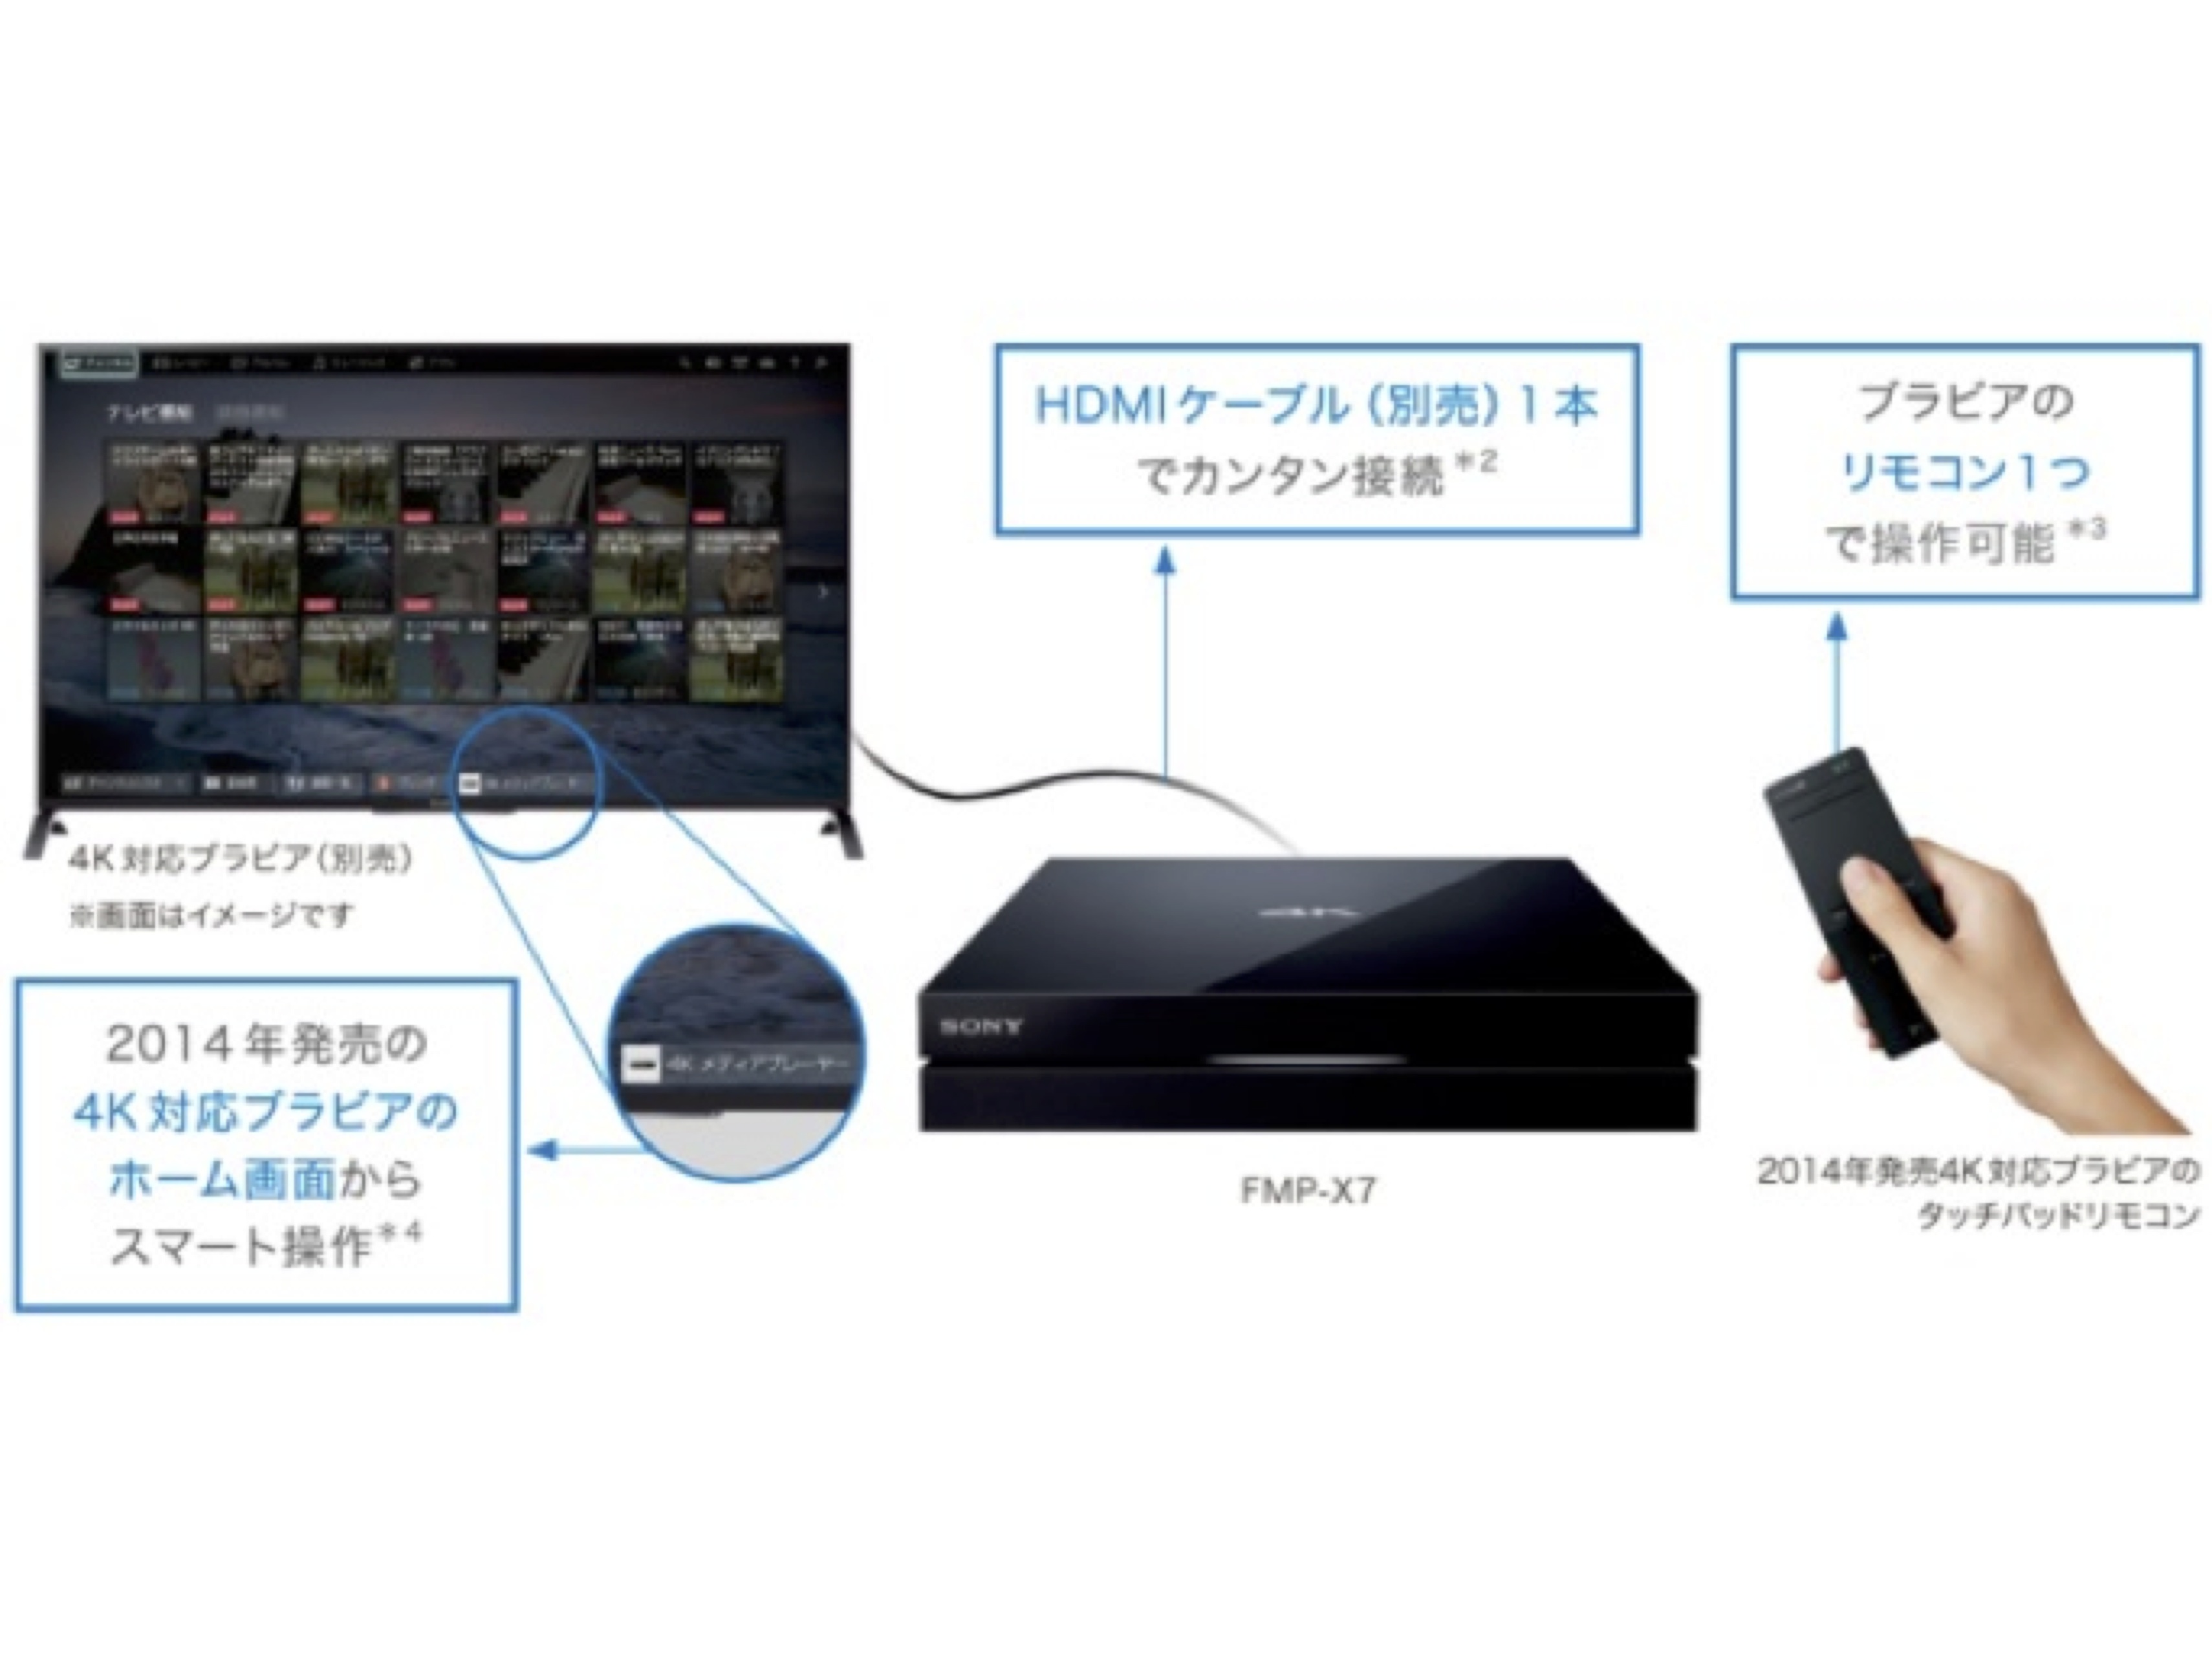 2014年発売の4K対応ブラビアであれば、ブラビアのホーム画面に本機のアイコンが表示され、リモコンで操作できる。